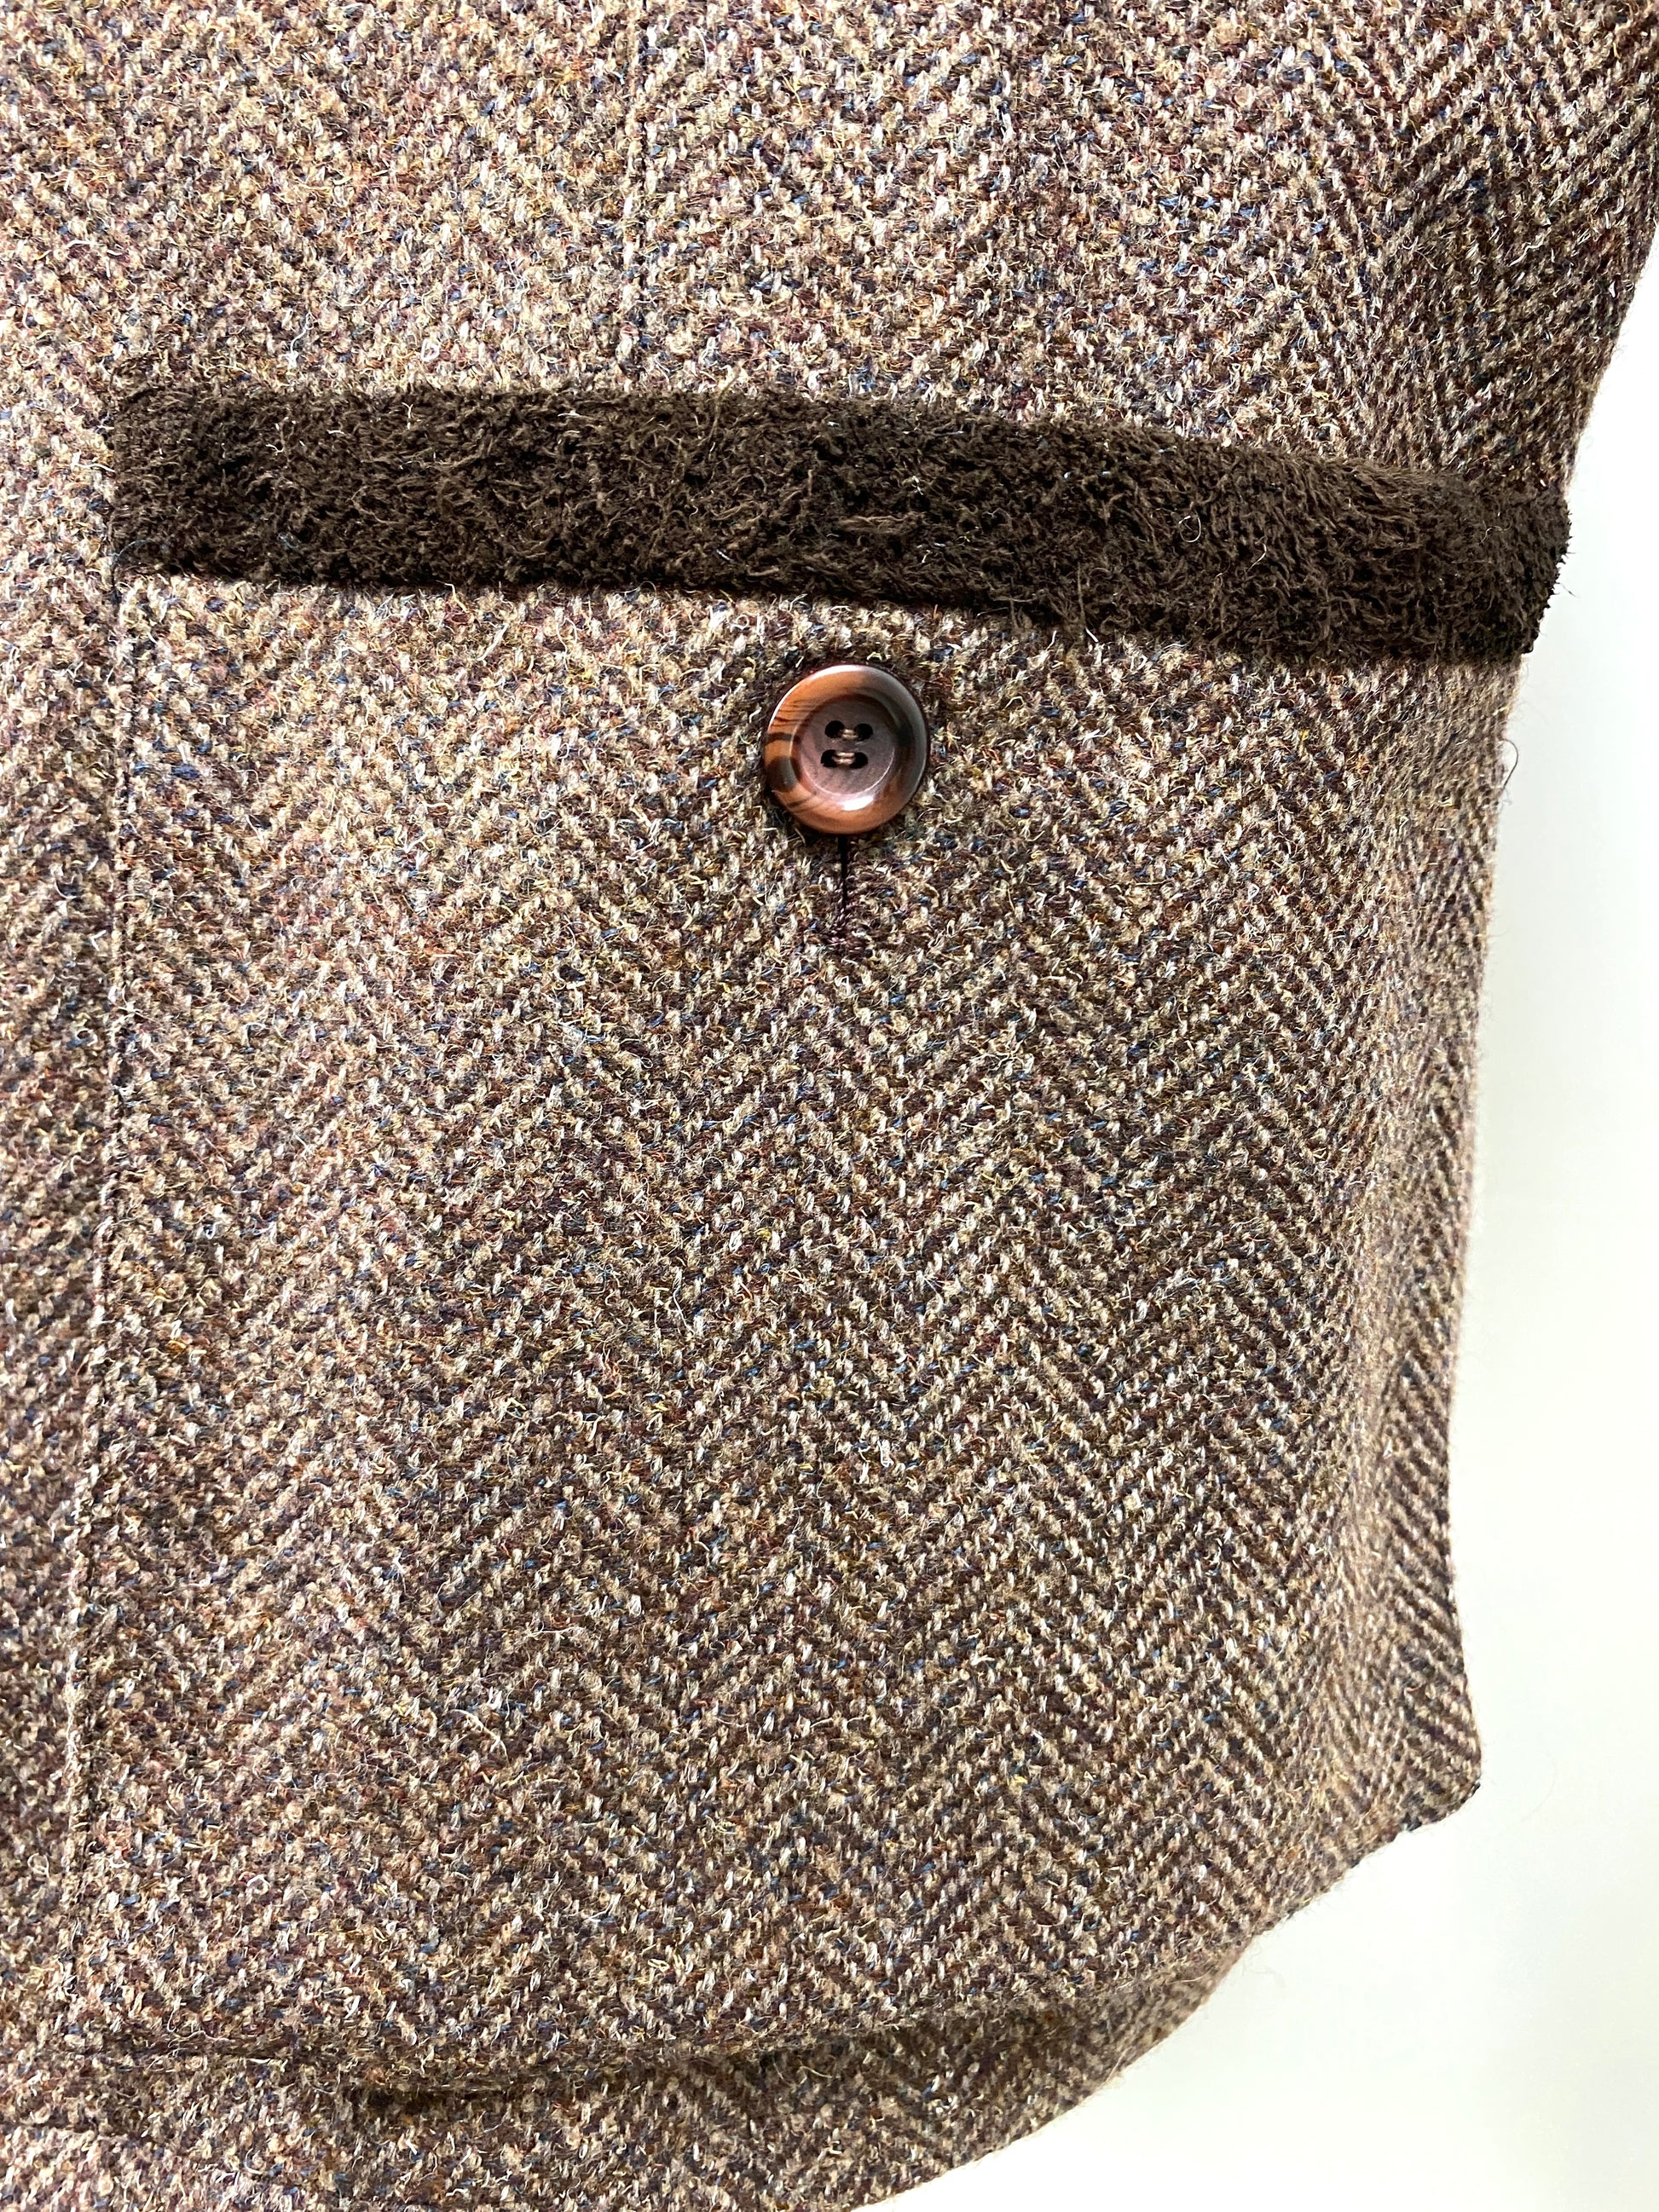 2000s Men's Brown Tweed Hunting Jacket, XL C48